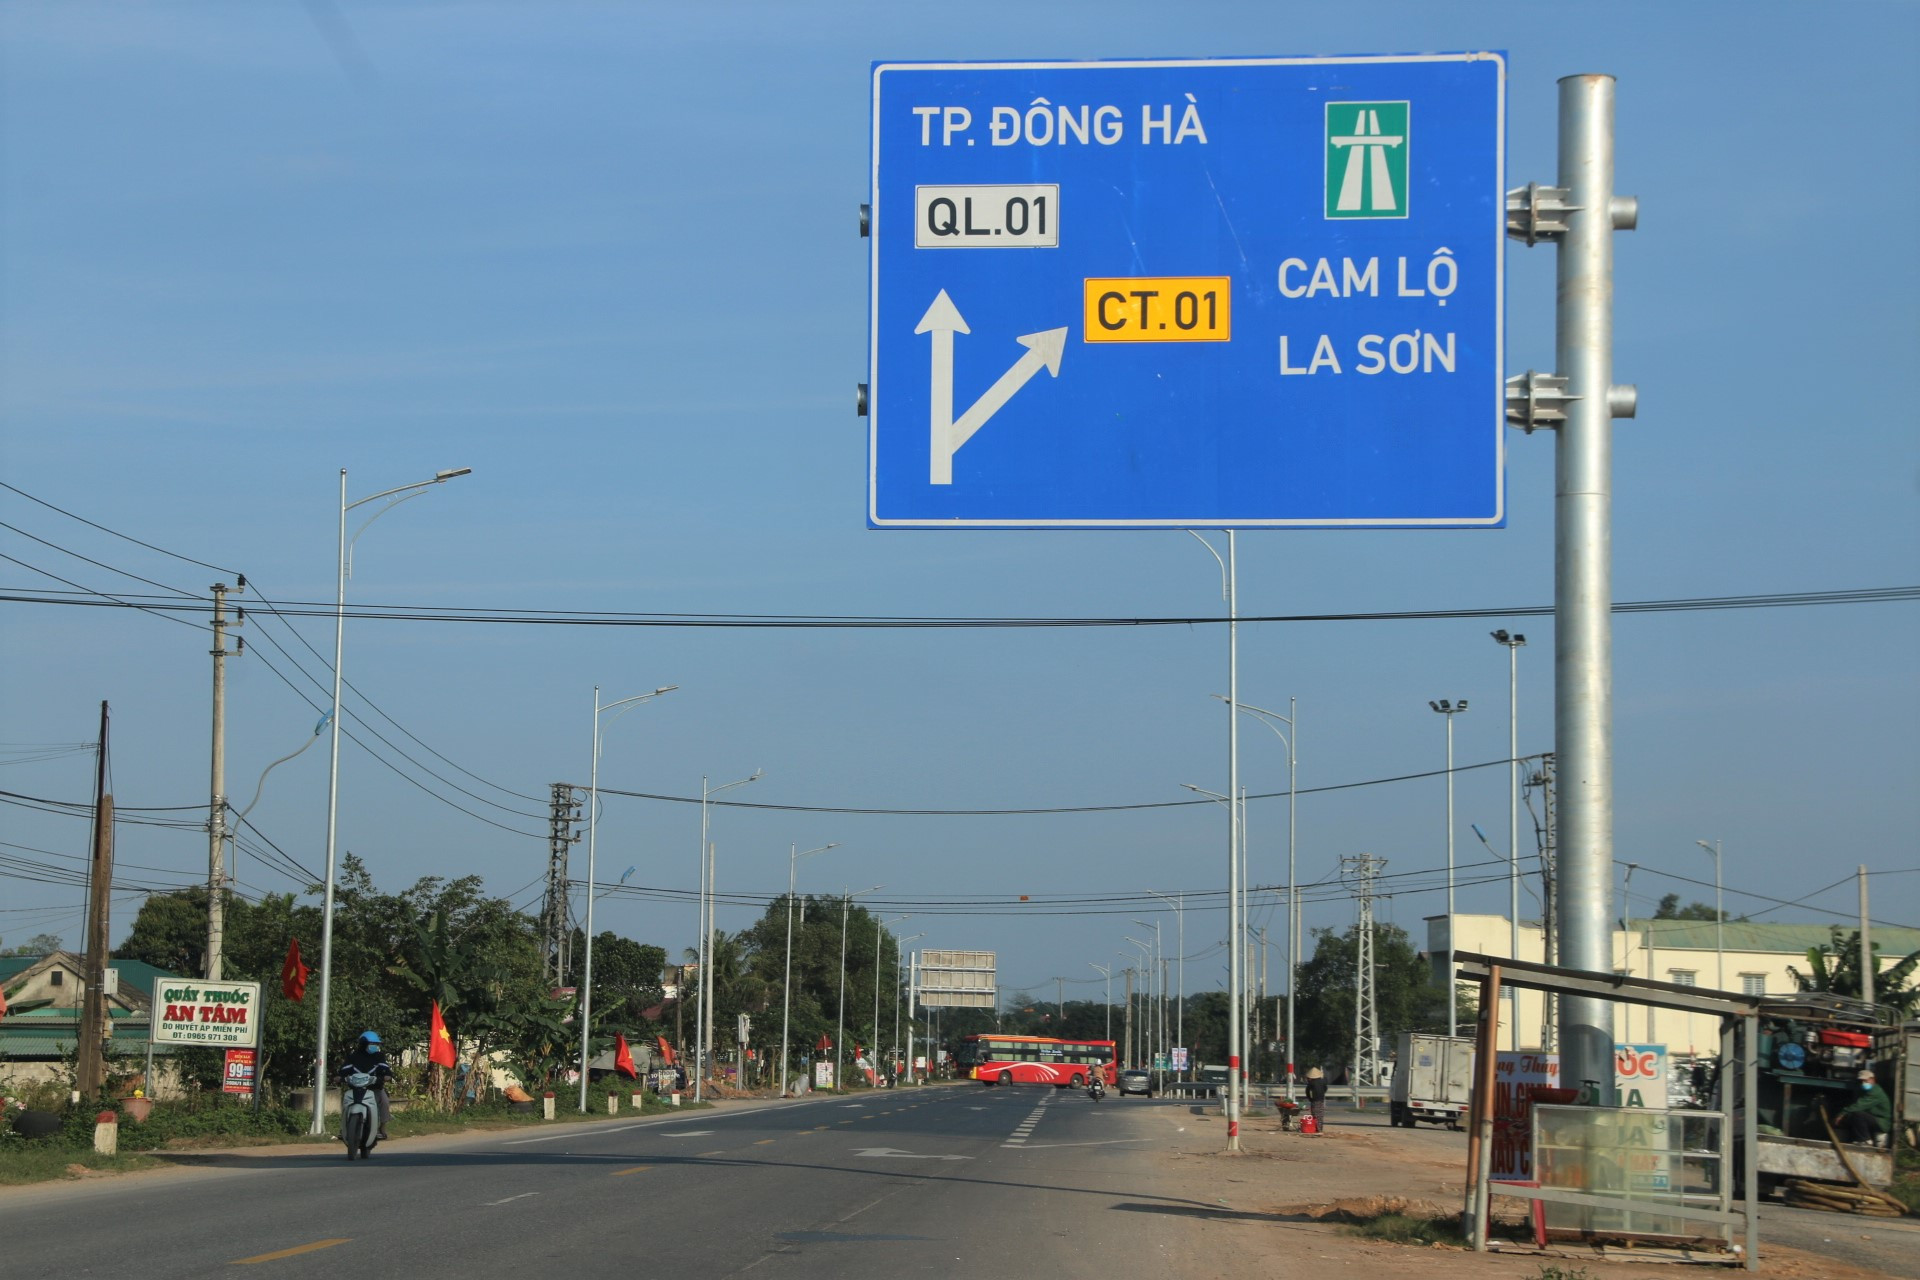 Rất nhiều tài xế lựa chọn tuyến cao tốc Cam Lộ - La Sơn khi điều khiển phương tiện qua các tỉnh Quảng Trị, Thừa Thiên - Huế.